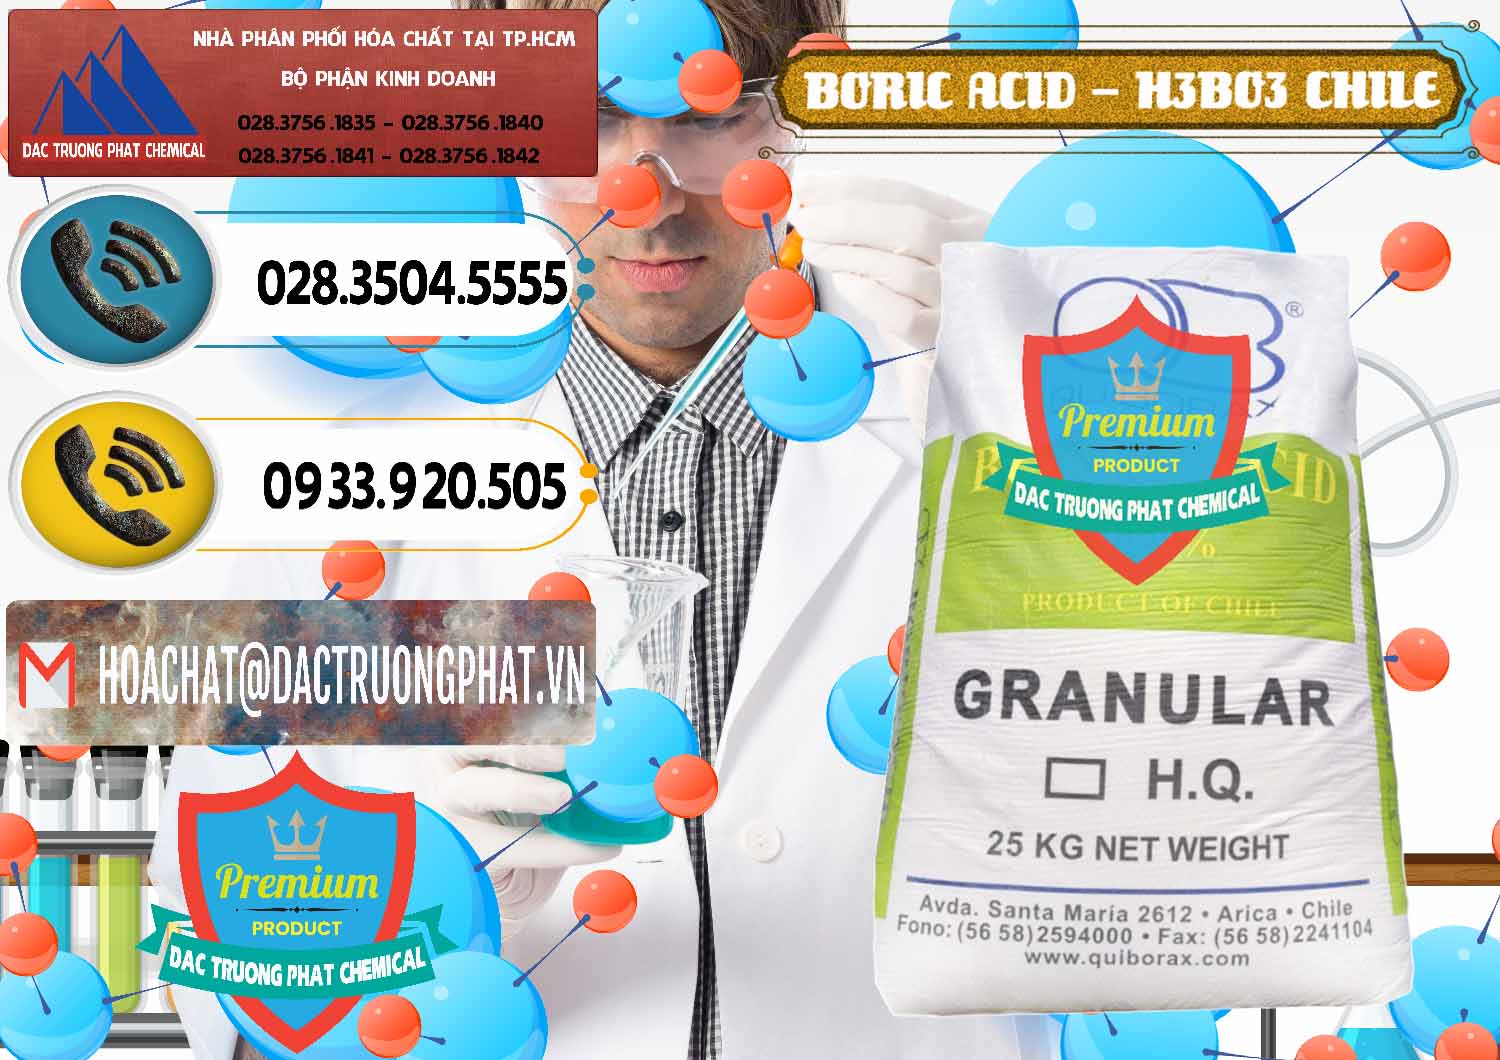 Nơi bán ( cung cấp ) Acid Boric – Axit Boric H3BO3 99% Quiborax Chile - 0281 - Cty phân phối _ cung cấp hóa chất tại TP.HCM - hoachatdetnhuom.vn